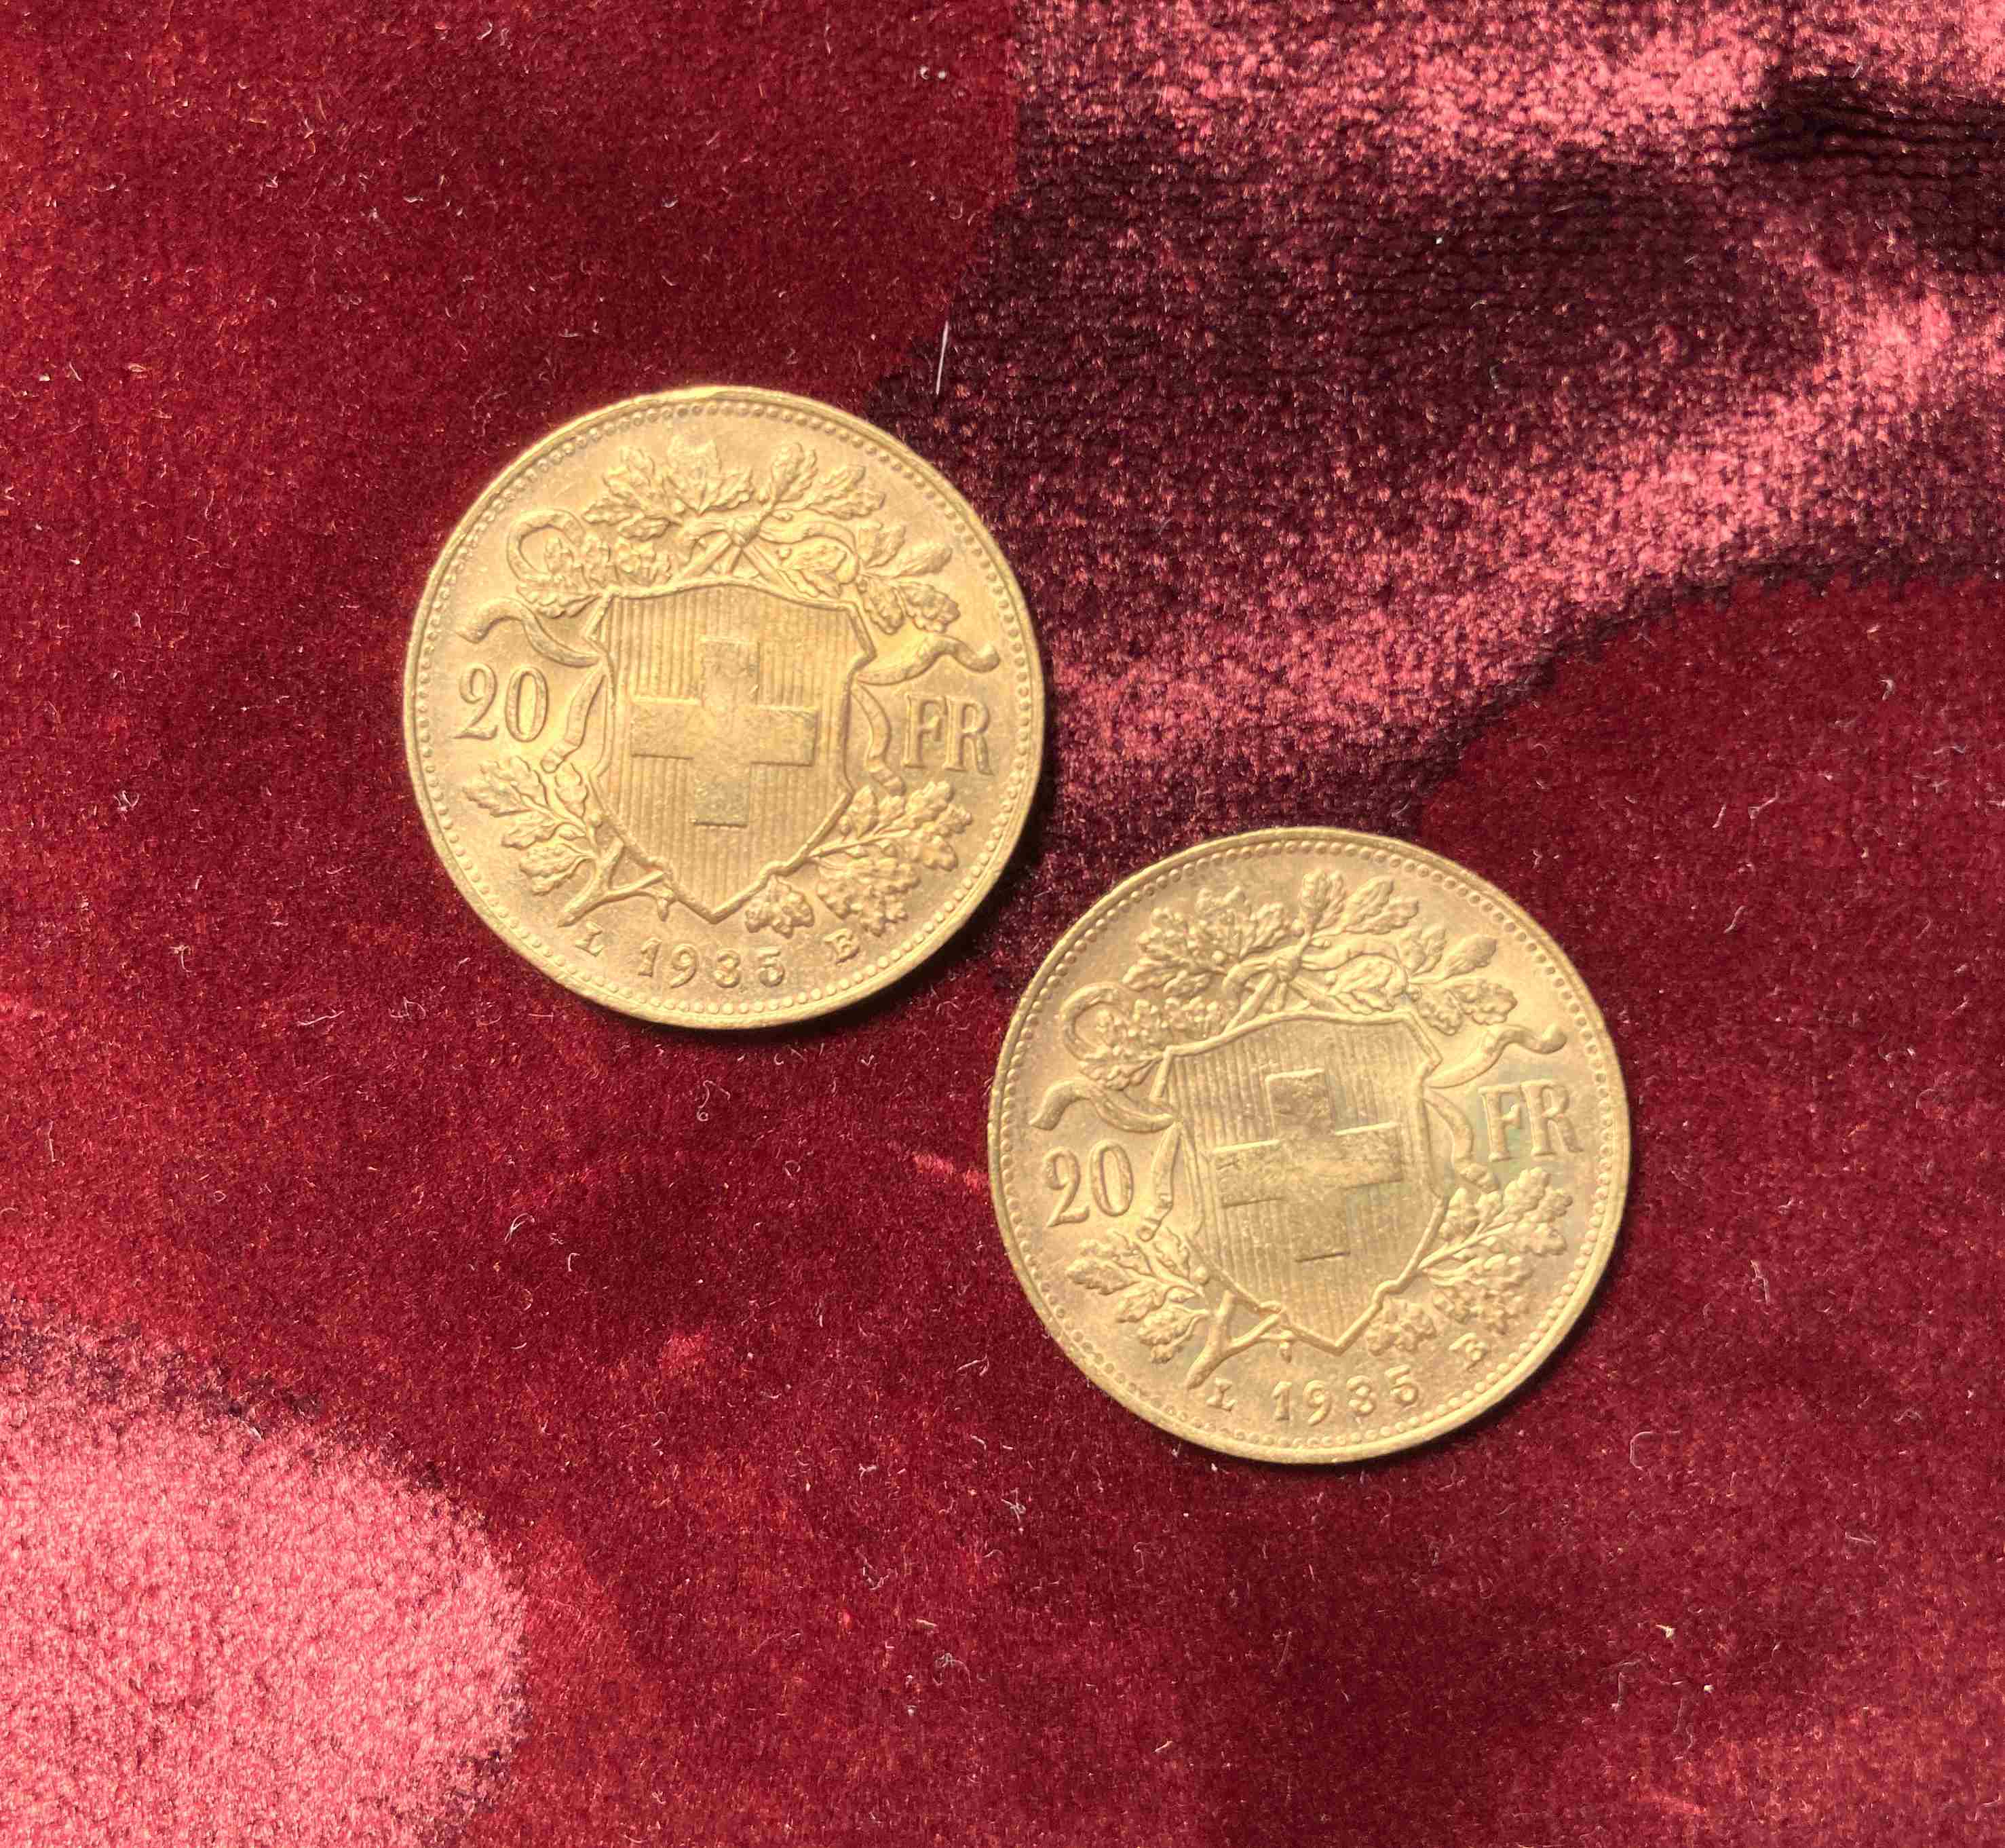 SUISSE, DEUX pièces de 20F or type Vreneli, 1935.